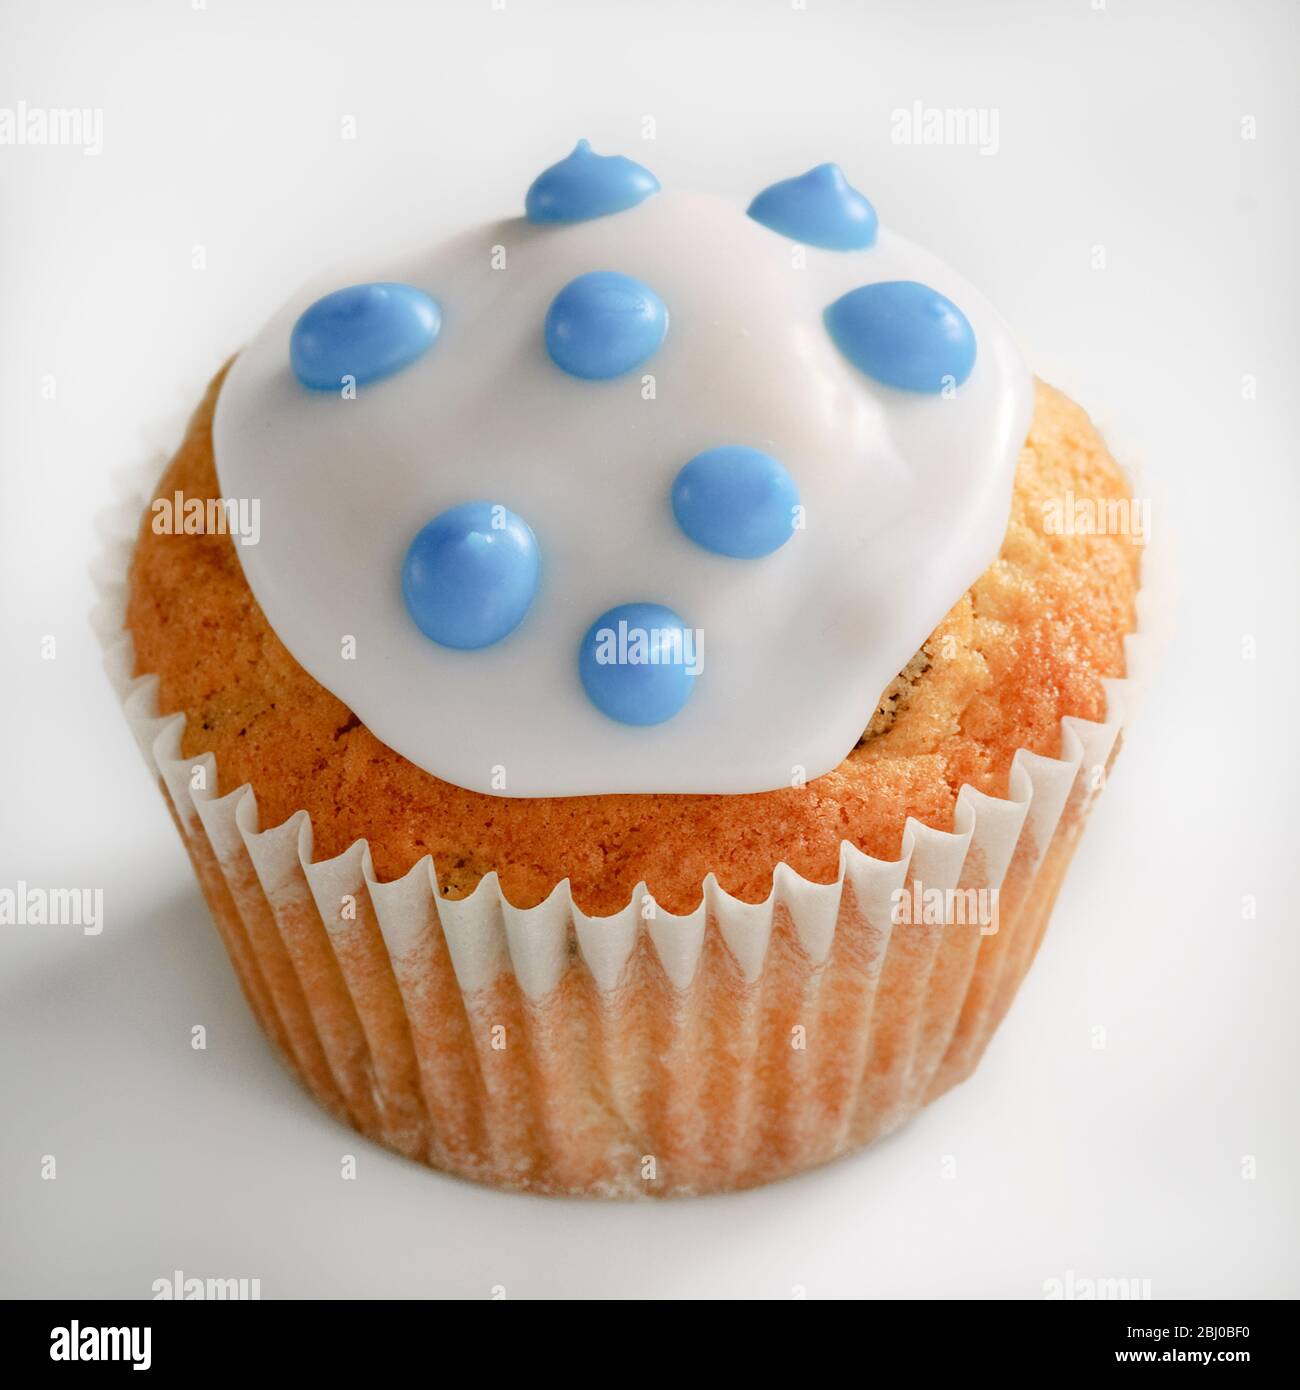 Cupcake ghiacciato con macchie blu su glassa bianca - Foto Stock